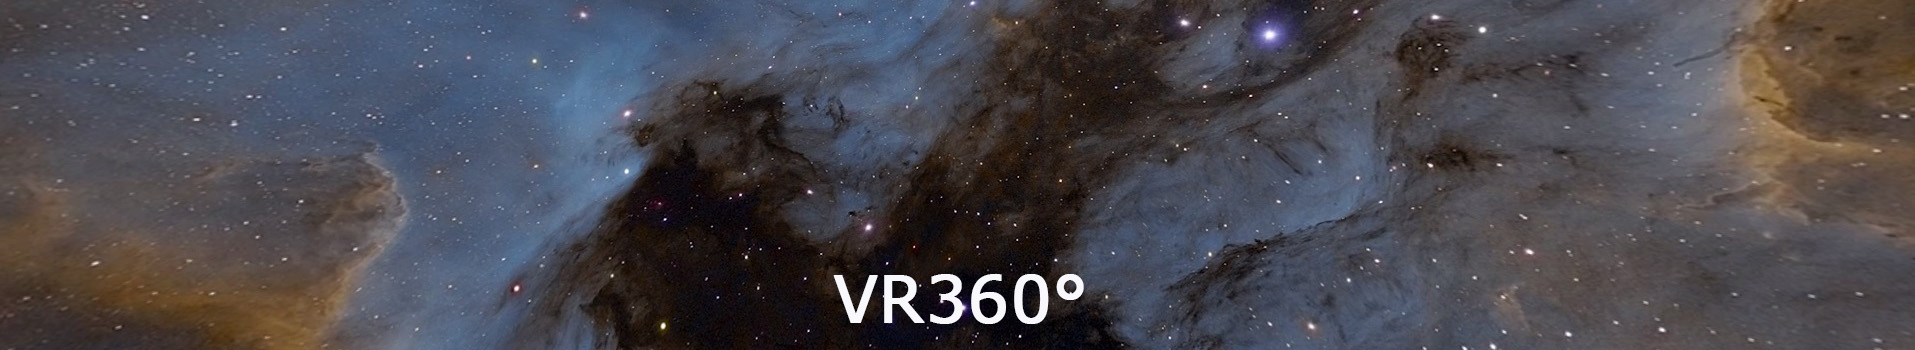 Astro VR360